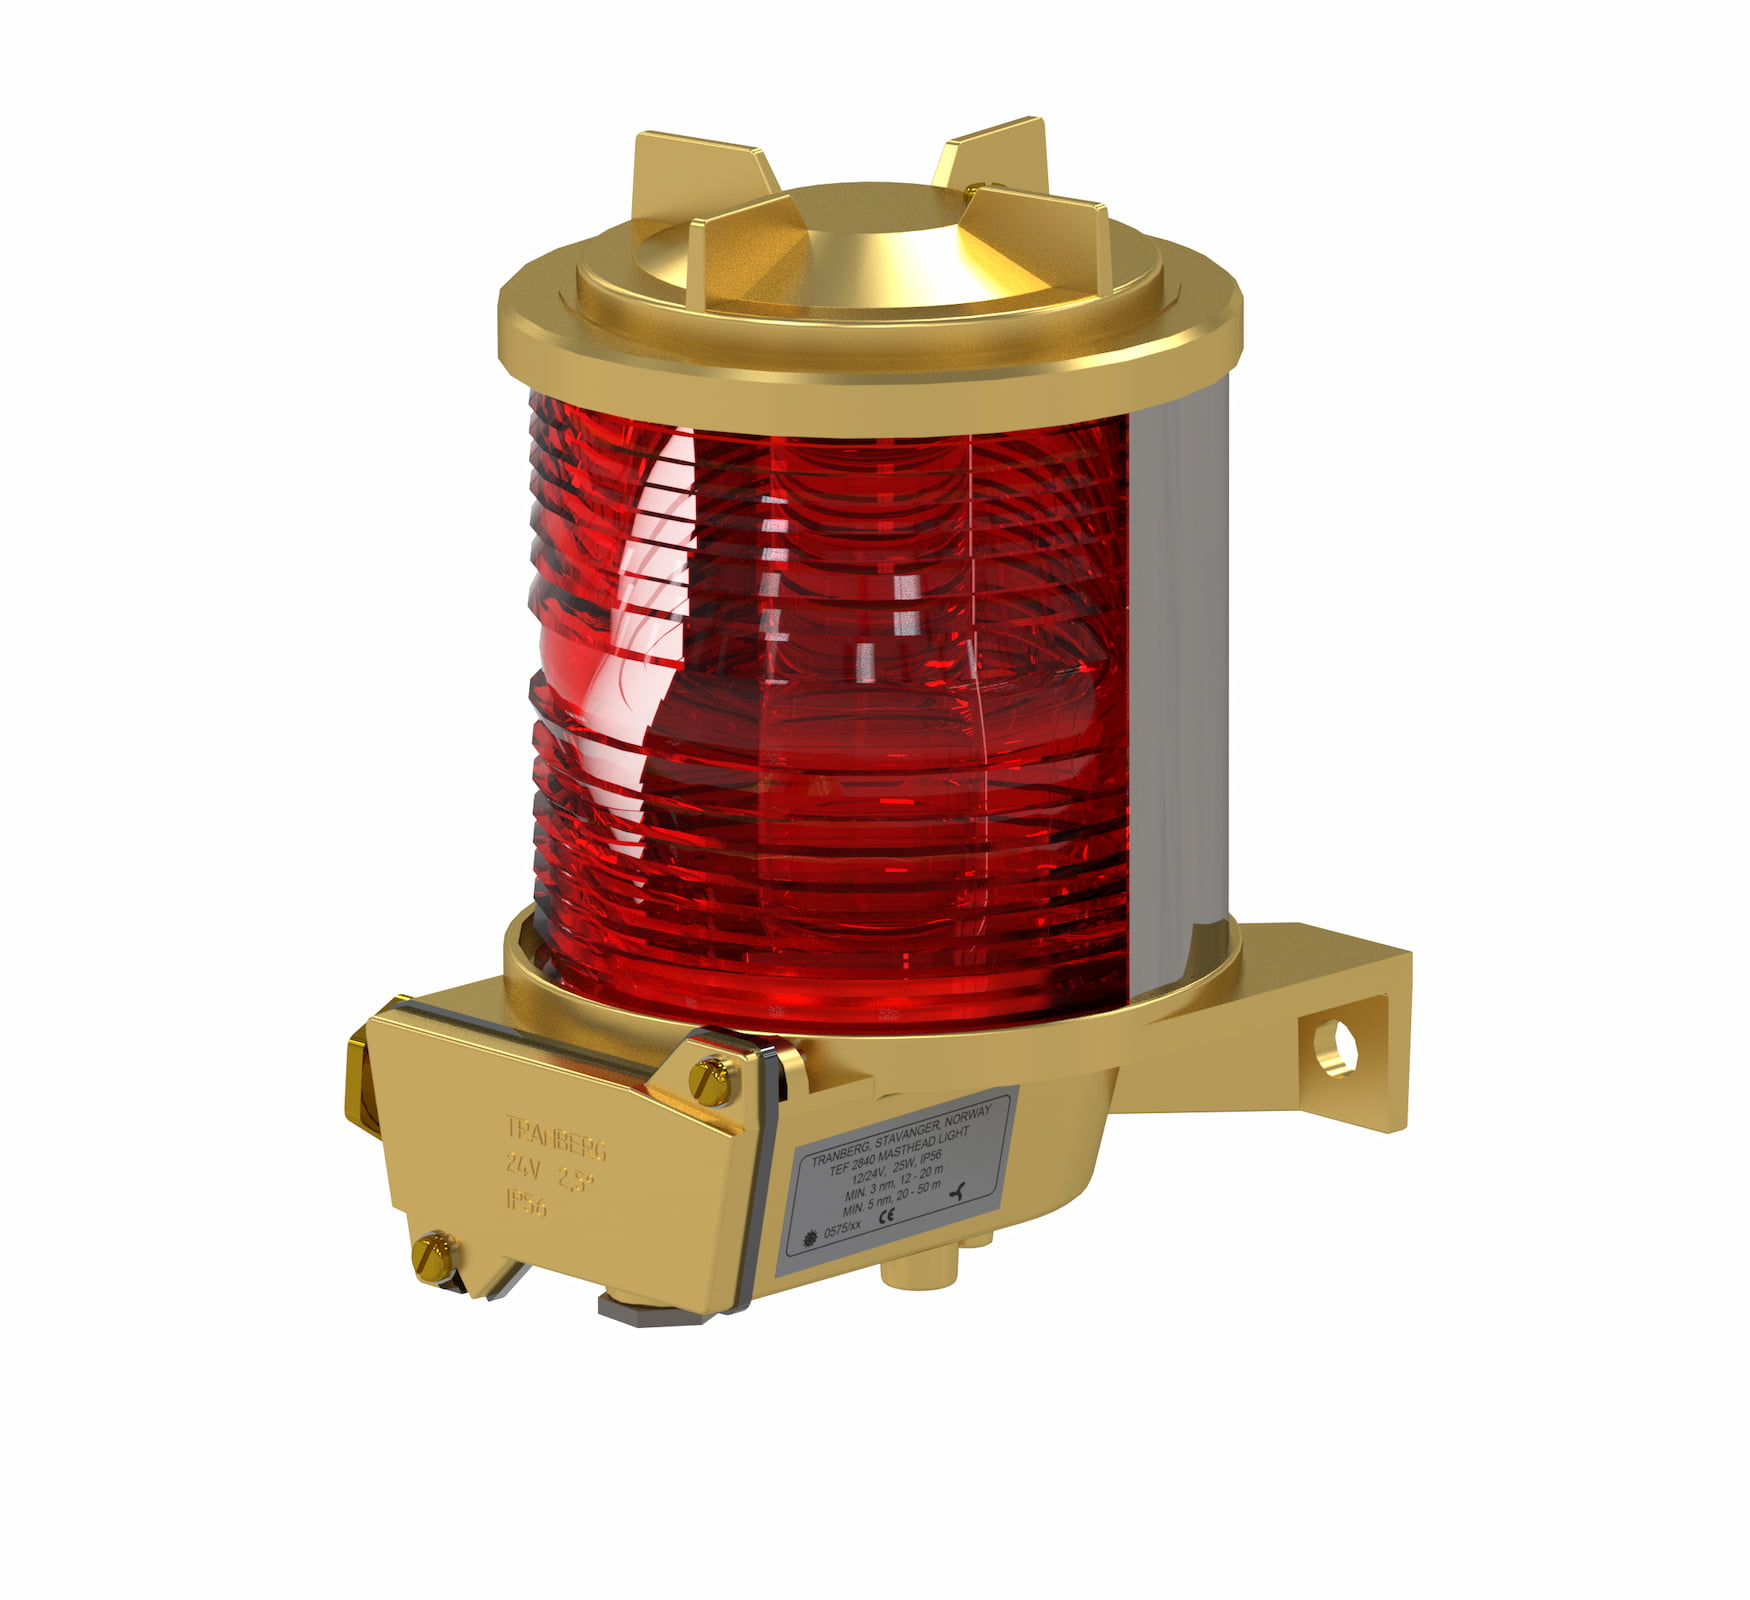 TEF 2870 Navigation light: Stern Suez 135° Red, P28S, 24V, Brass/Glass